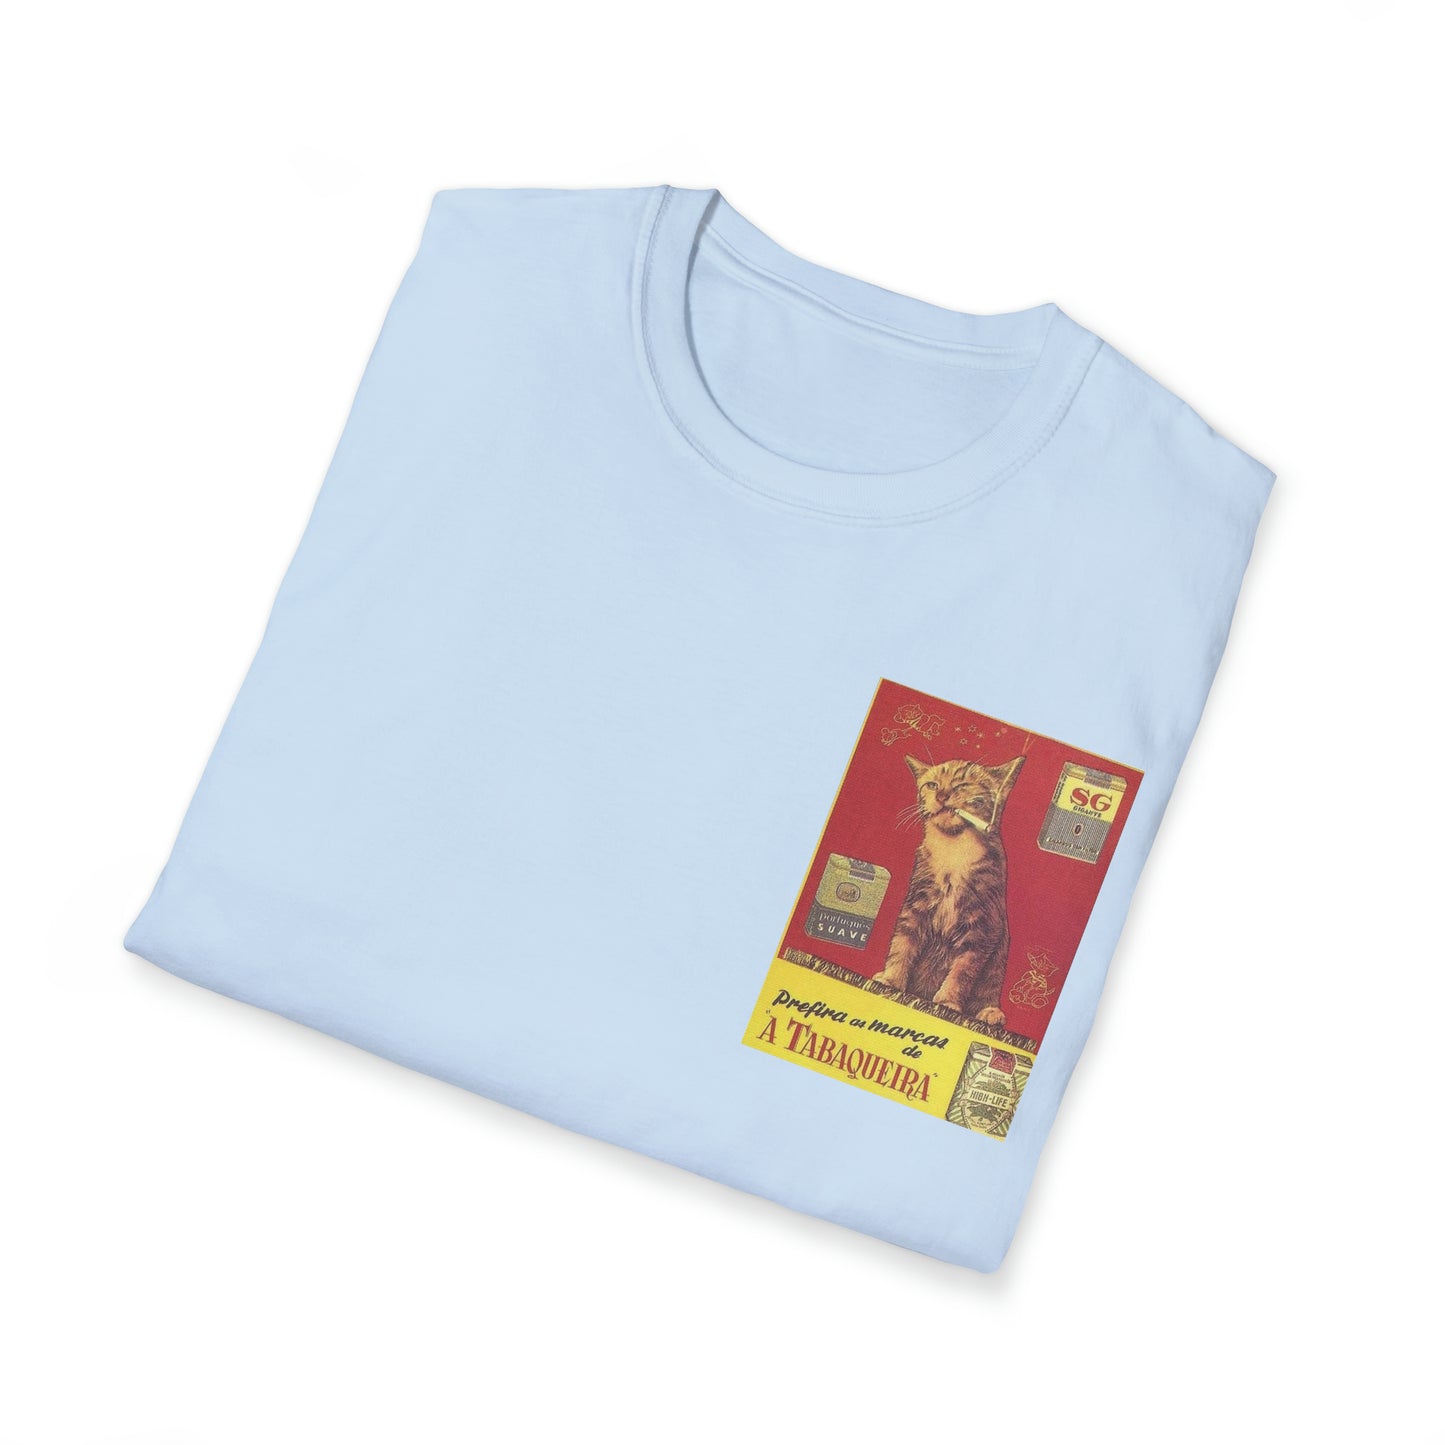 Unisex T-Shirt Tobaqueira